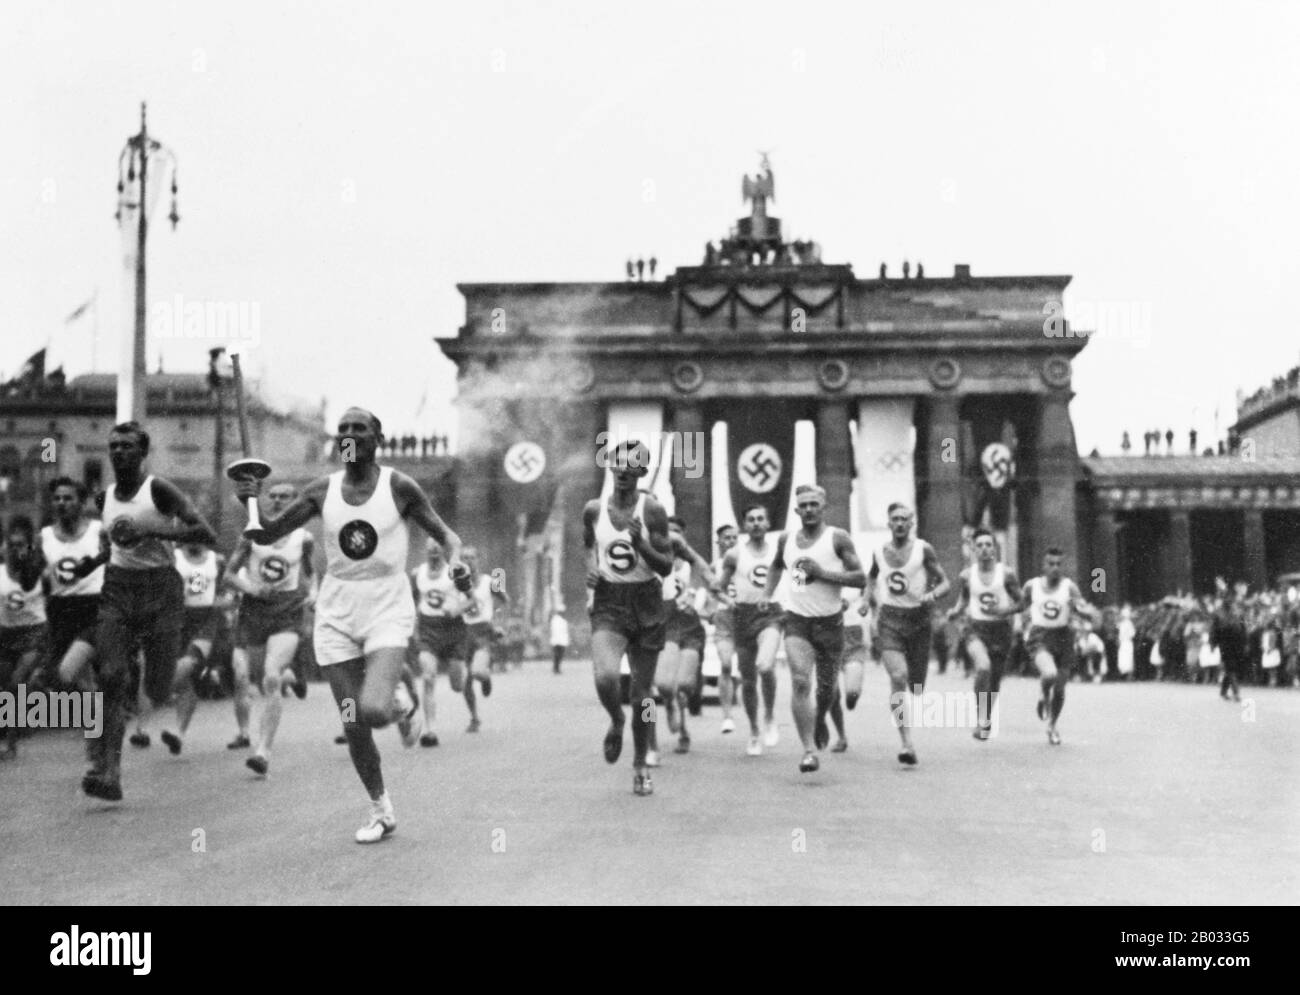 Les Jeux olympiques d'été de 1936 (allemand : Olympiche Sommerspiele 1936), officiellement connus sous le nom de Jeux de la XI Olympiade, ont été un événement international multisports qui a eu lieu en 1936 à Berlin, en Allemagne. Le chancelier Adolf Hitler a vu les Jeux comme une occasion de promouvoir son gouvernement et ses idéaux de suprématie raciale, Banque D'Images